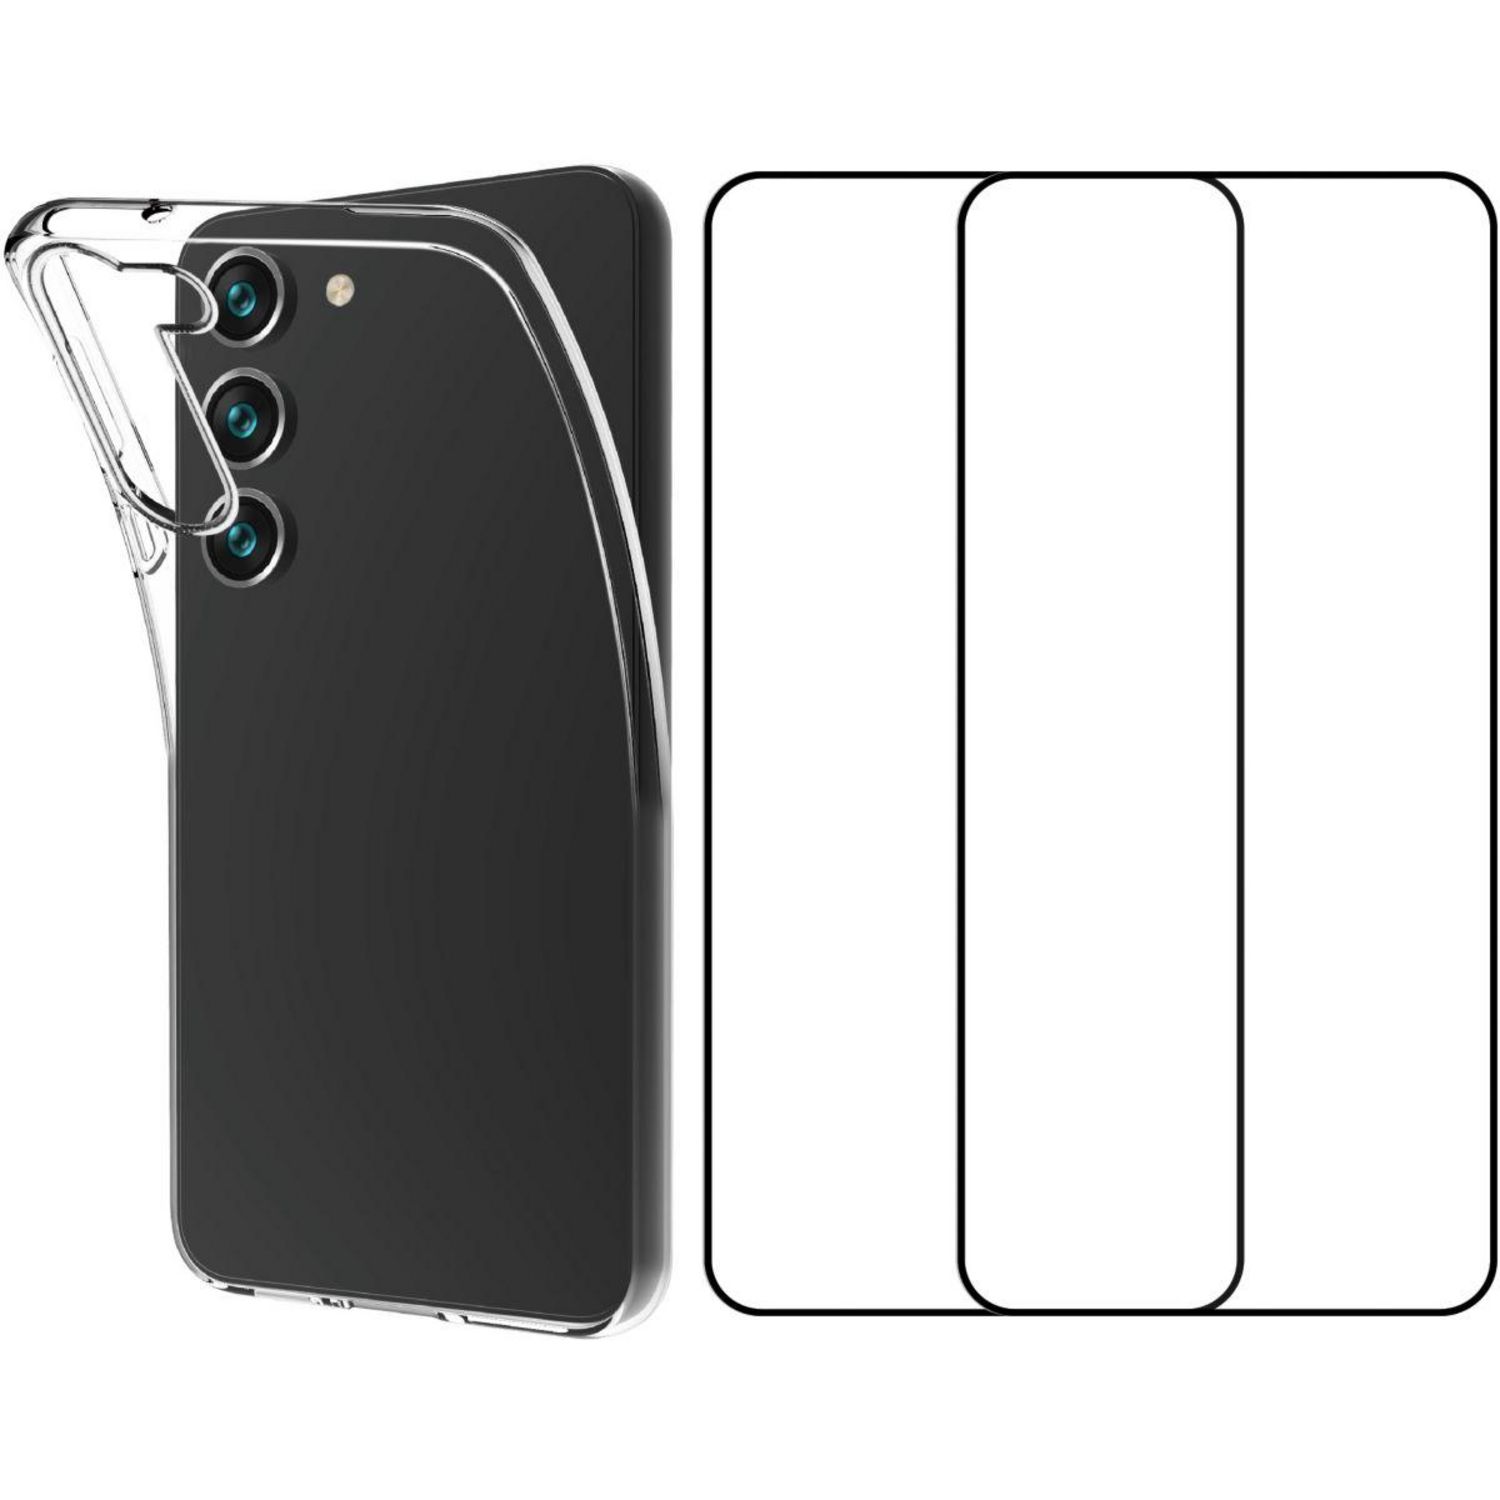 QILIVE Protection écran verre trempé Samsung Galaxy S21 pas cher